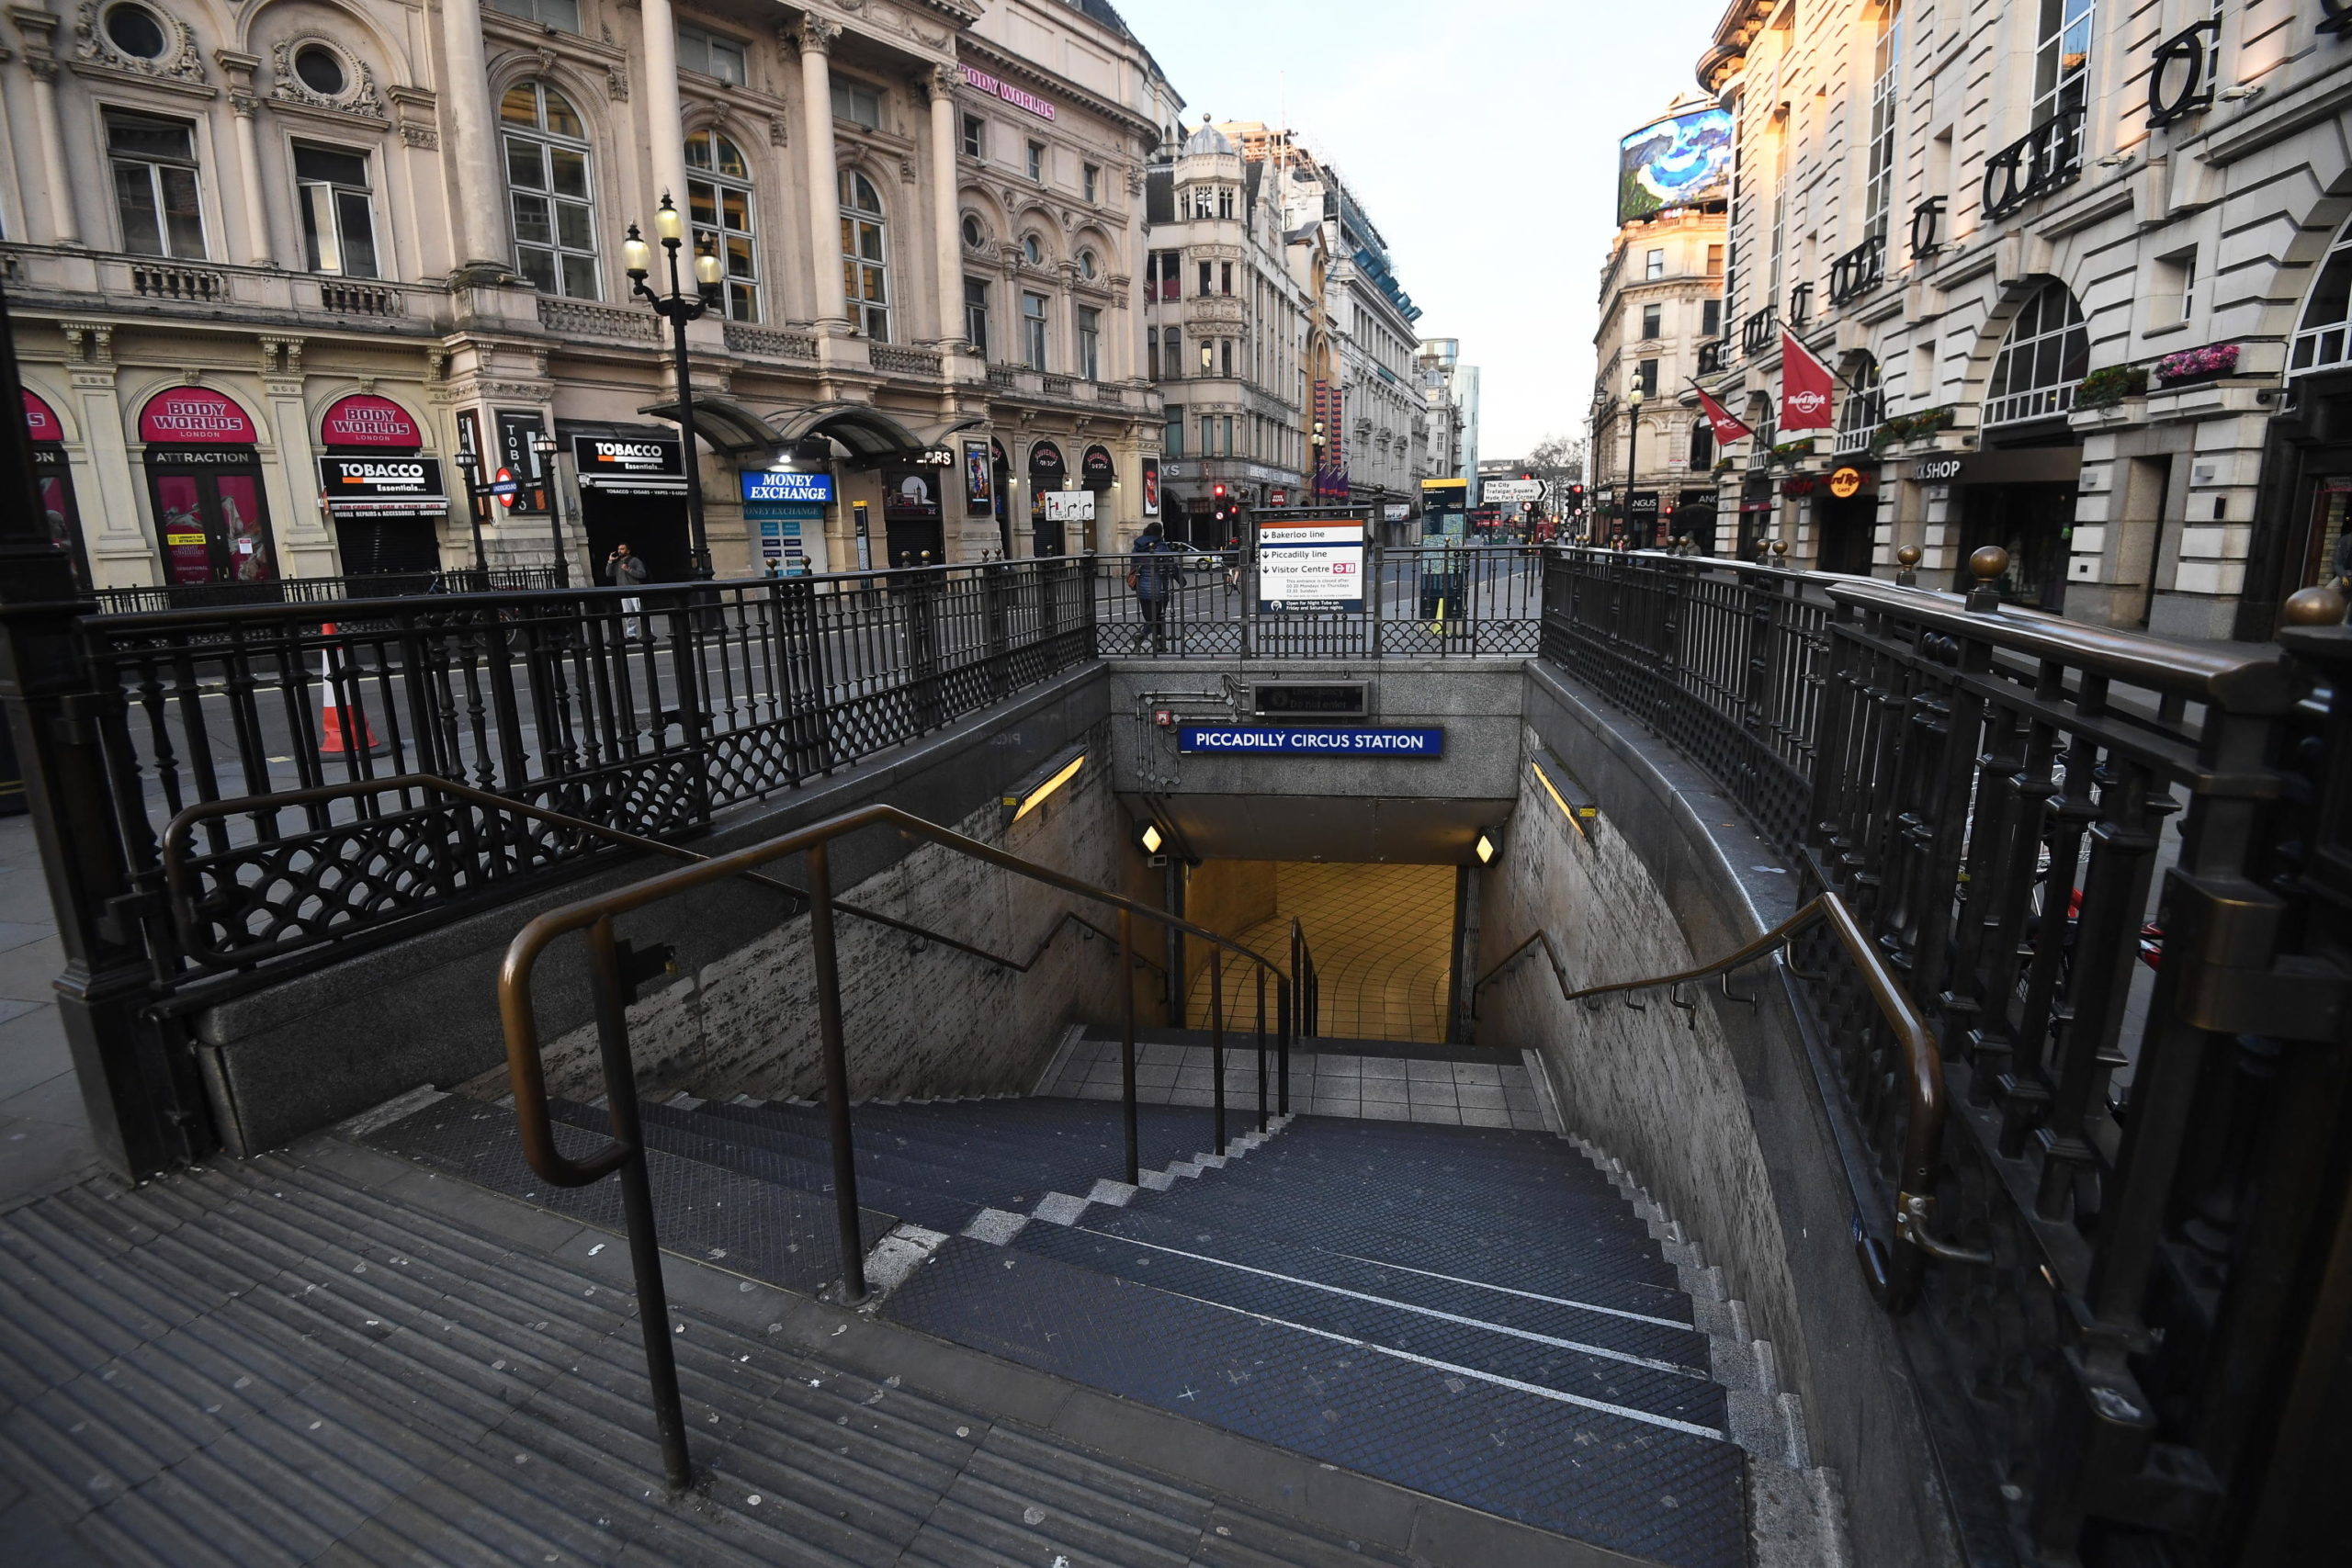 Le scale vuote della metropolitana. Stazione di Piccadilly Circus, Londra